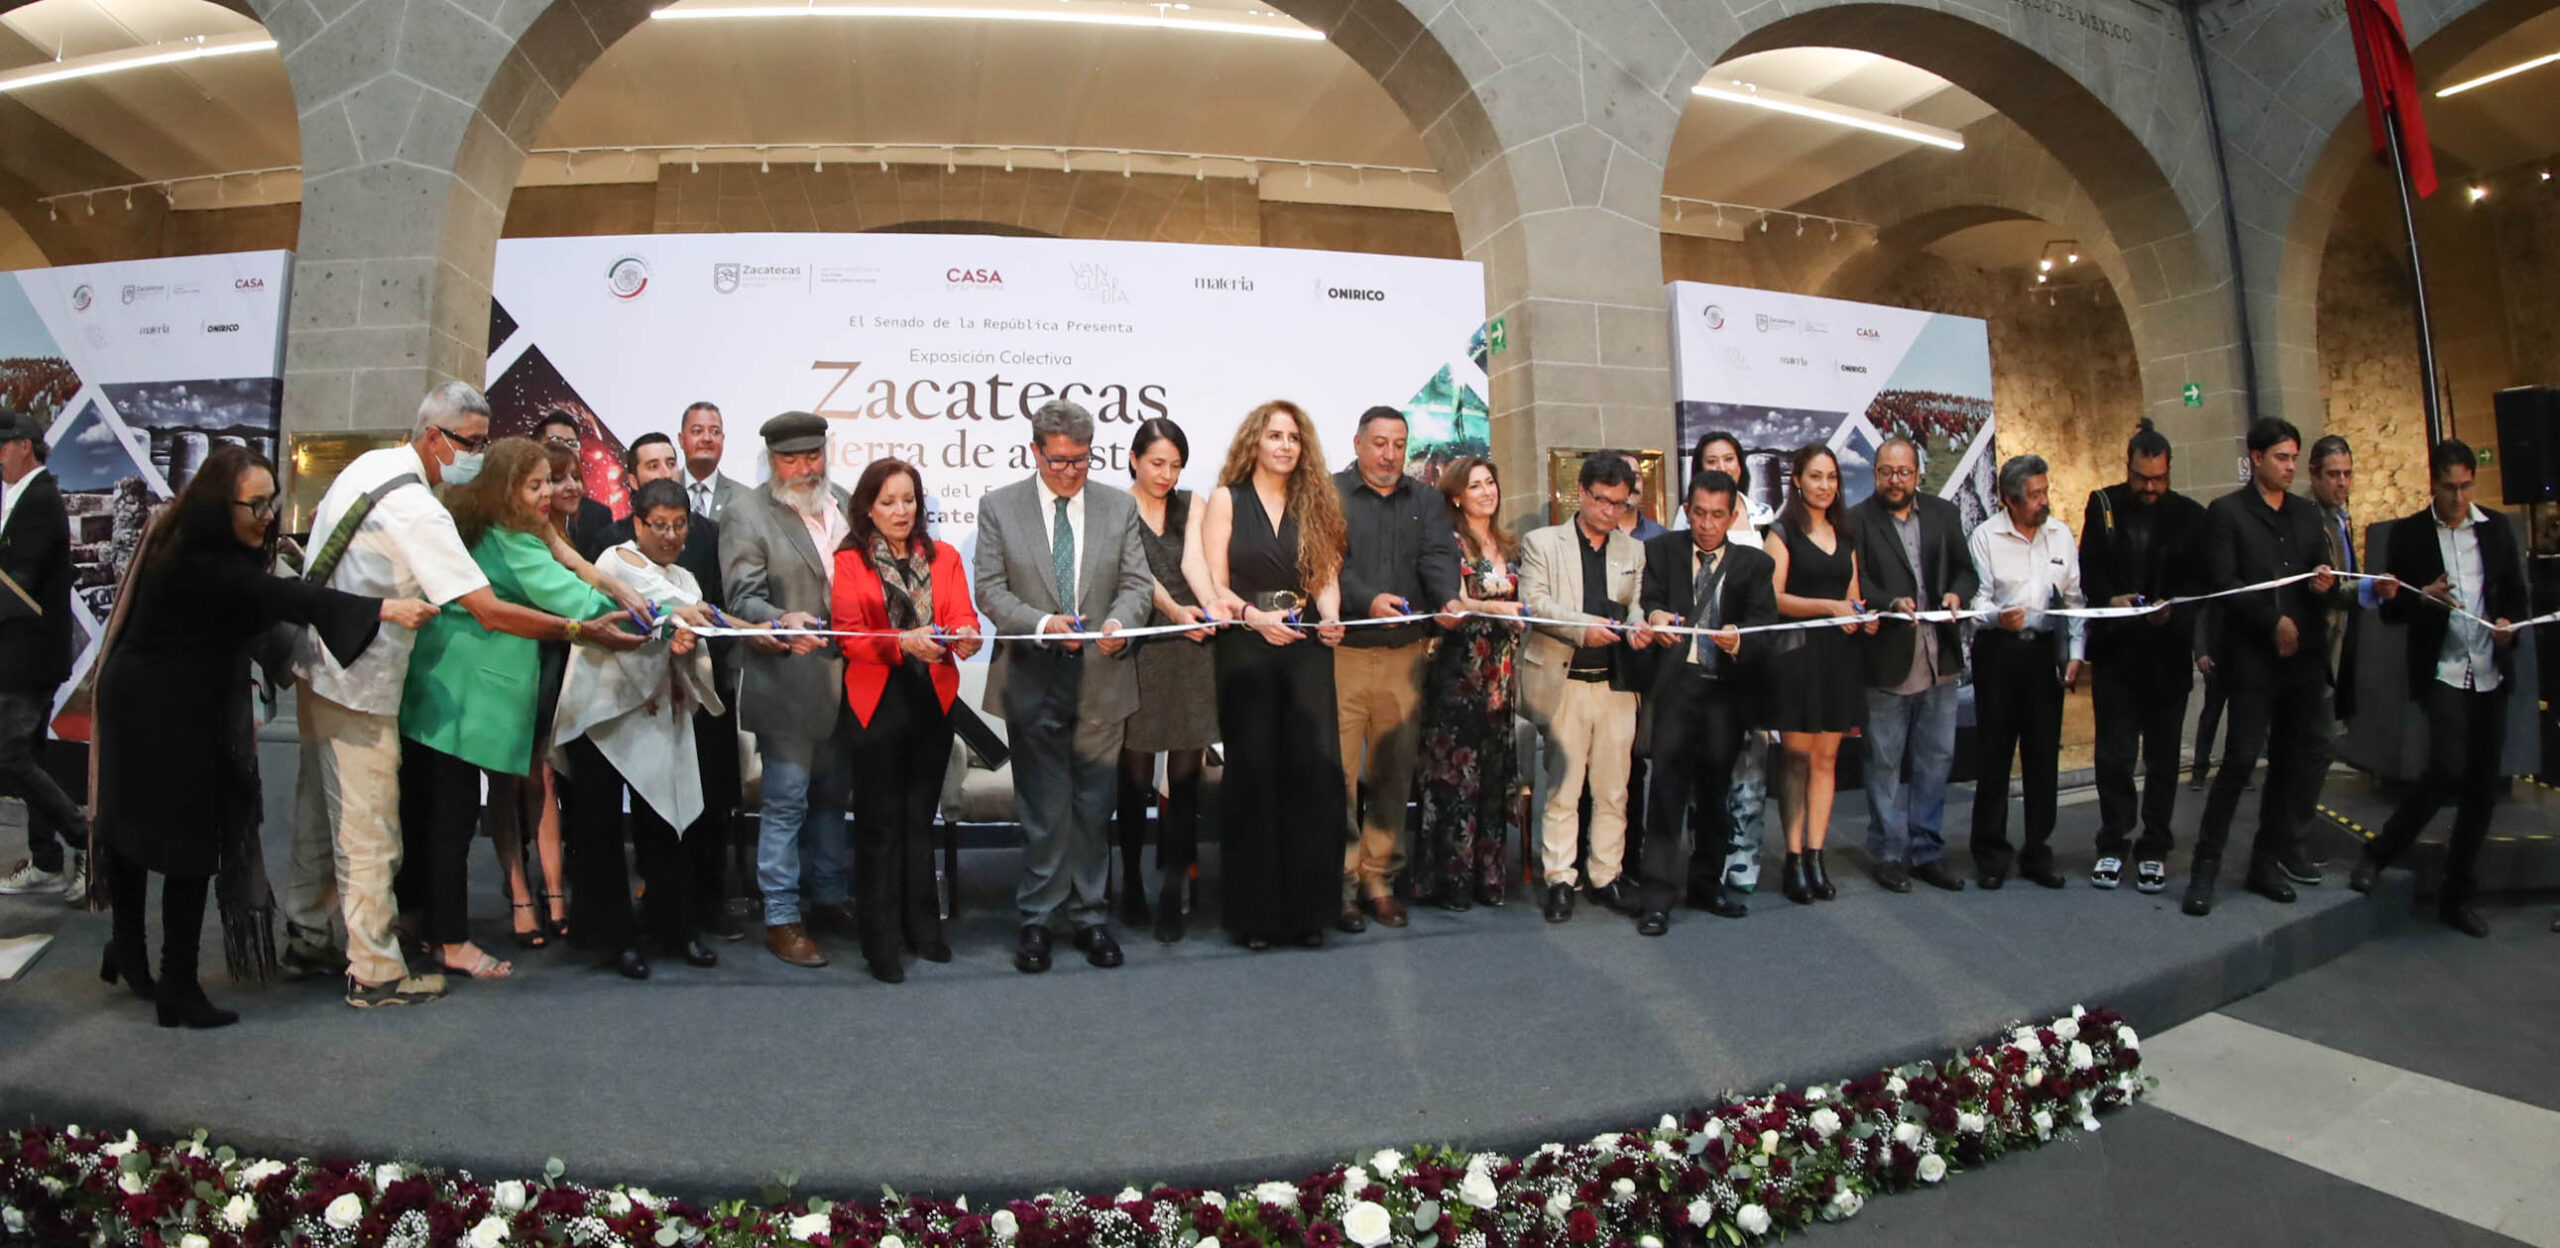 Zacatecas, de los enclaves artísticos más importantes del país: Monreal Ávila